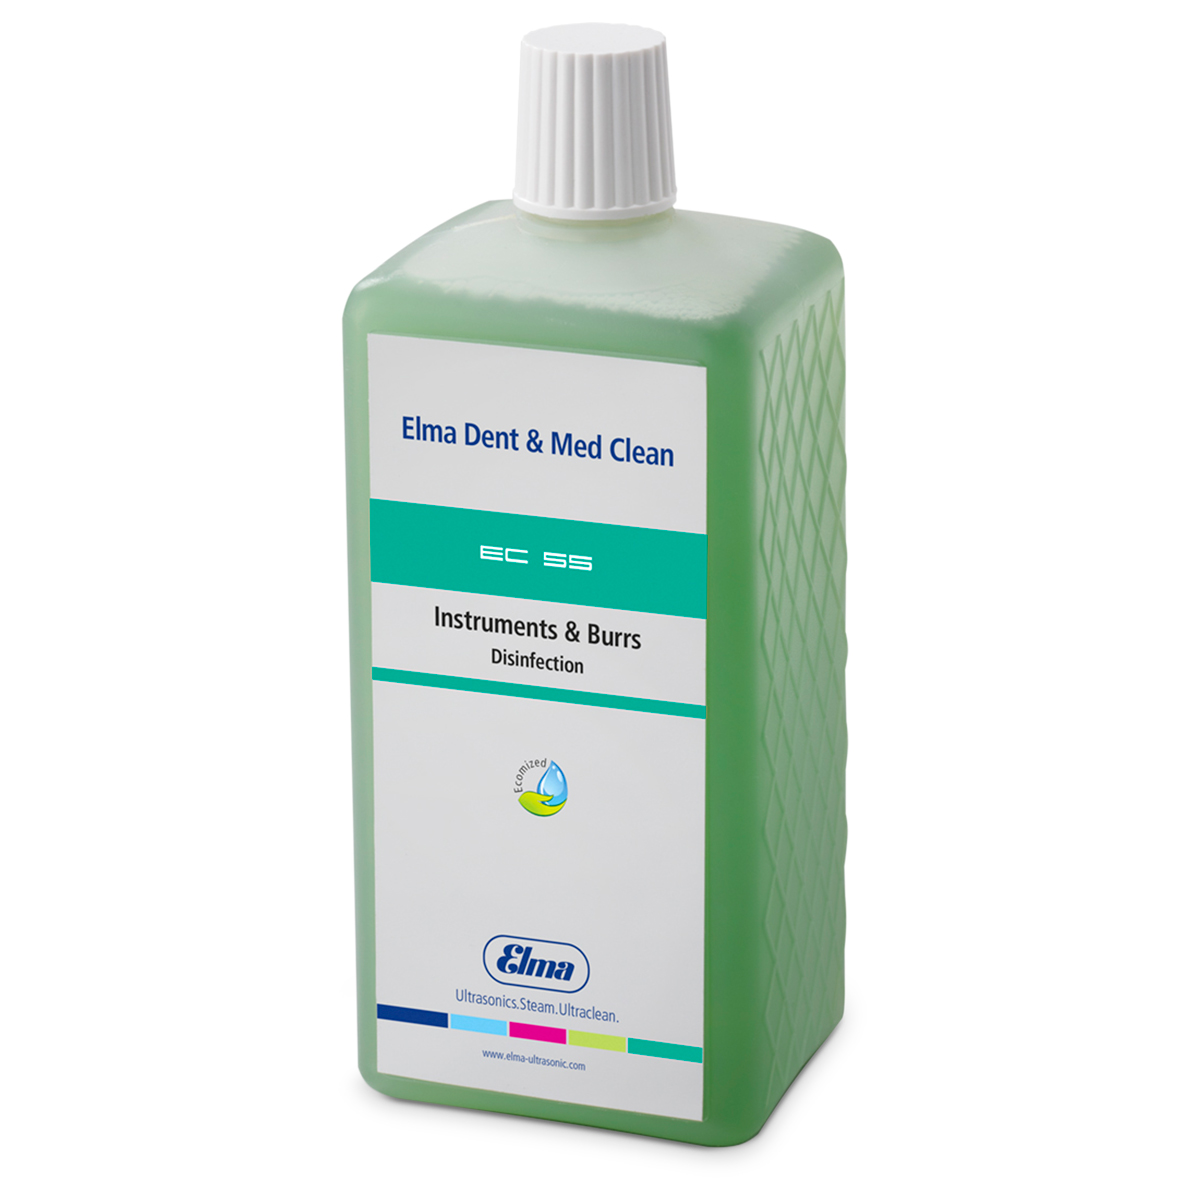 Elma Clean 55, concentré pour la désinfection dans le bain d‘immersion avec et sans ultrasons, 1 litre